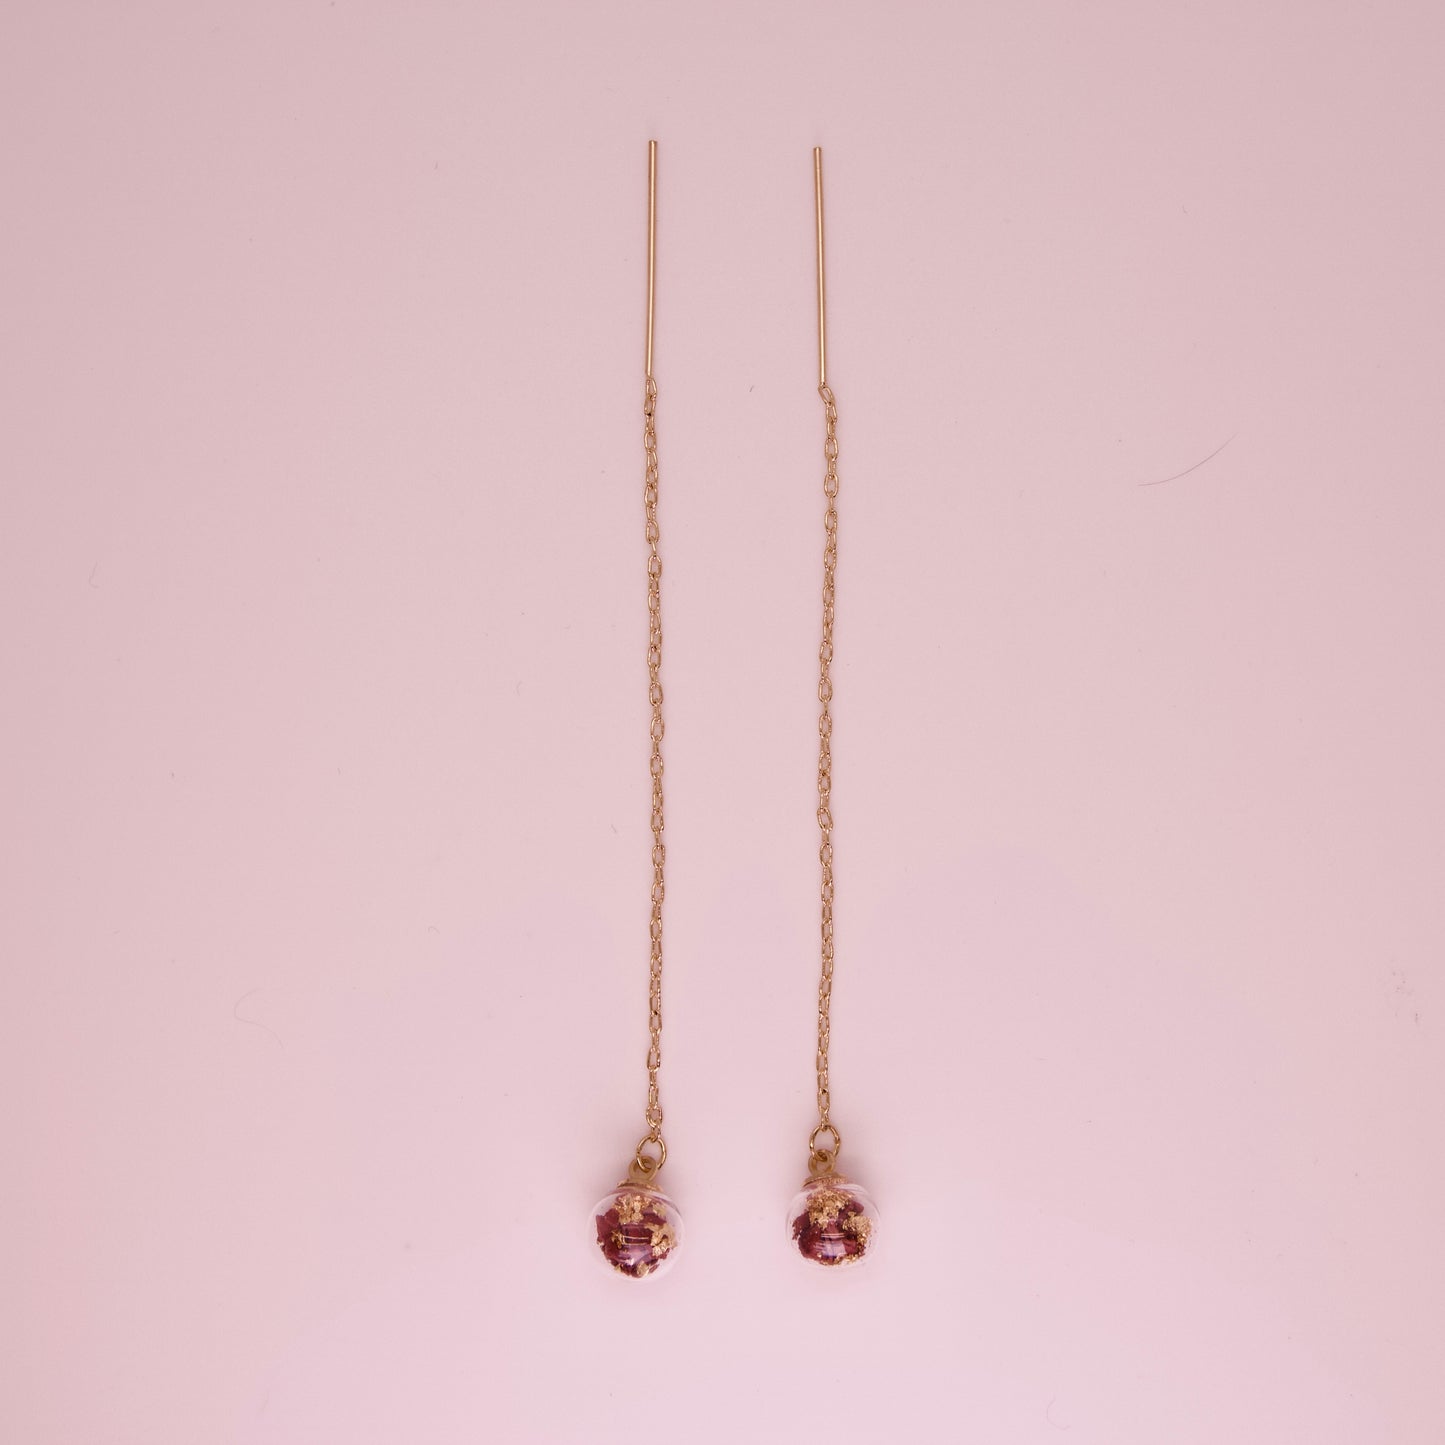 Dangling Glass Sphere Earrings - Type II - Red